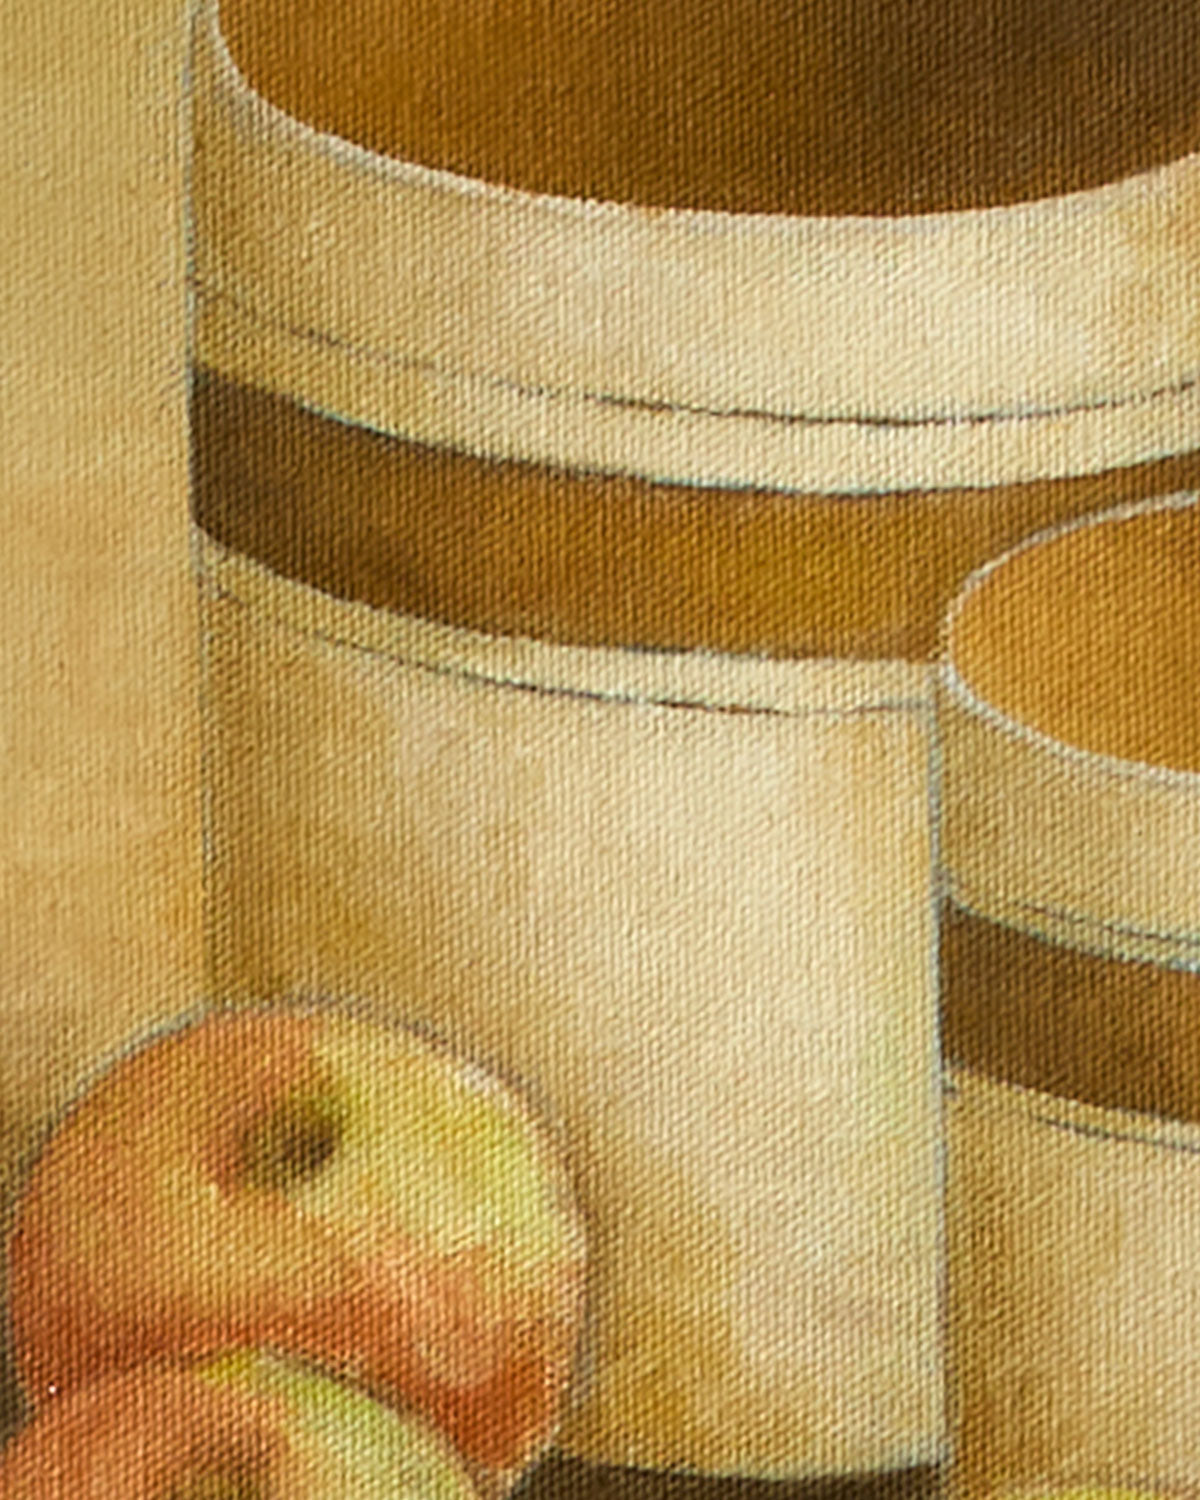 Three Jars and Apples